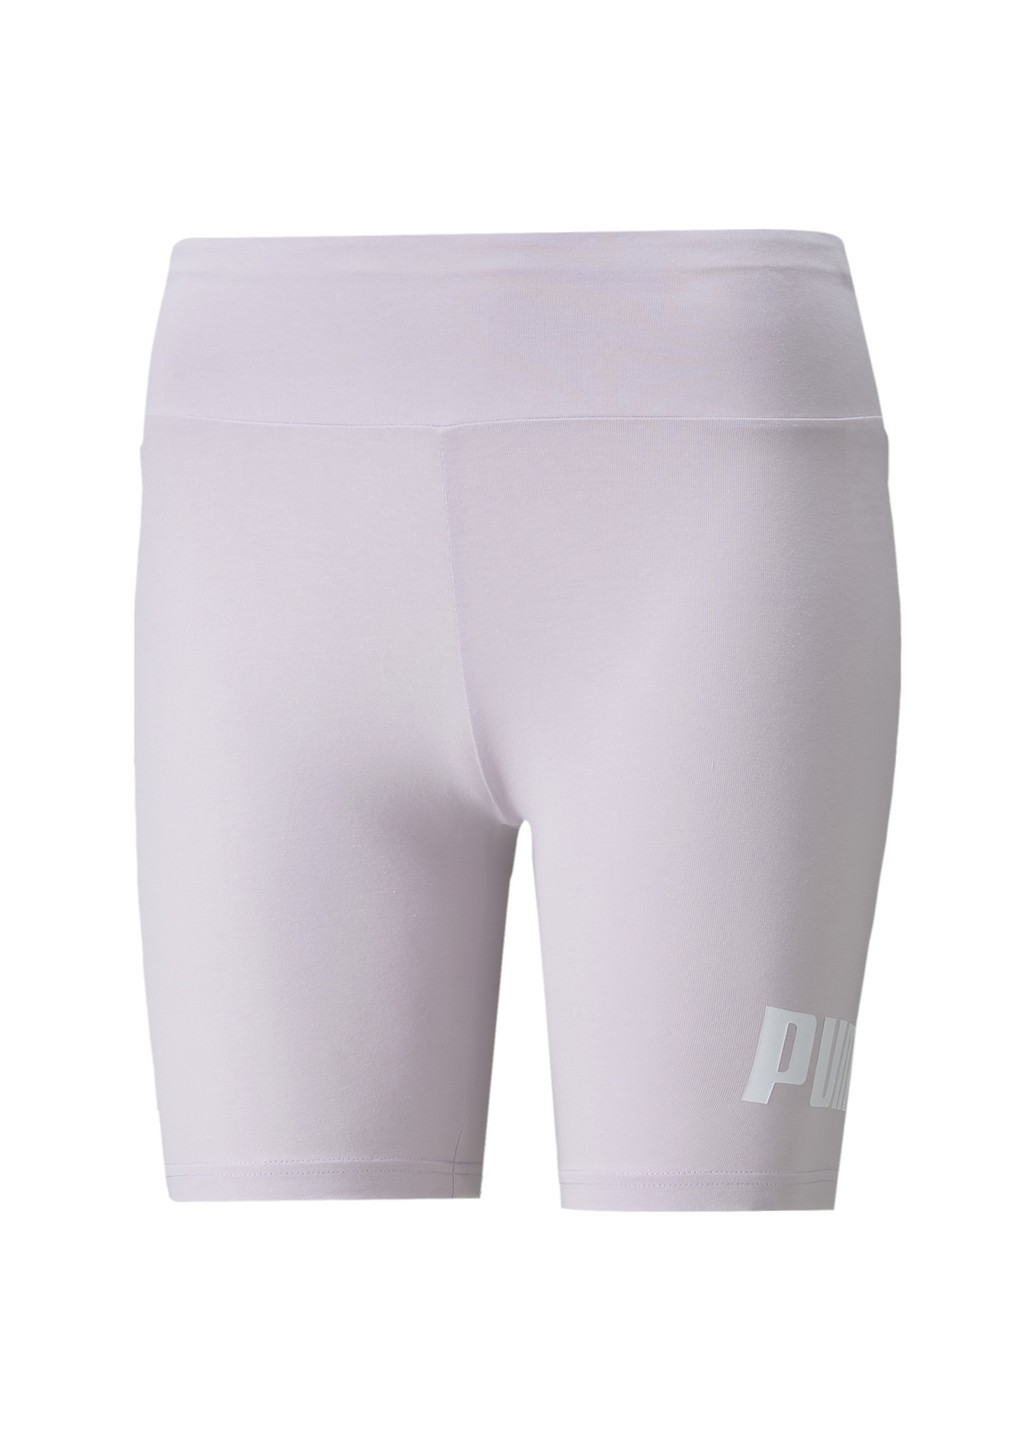 Пурпурные демисезонные леггинсы essentials logo women's short leggings Puma